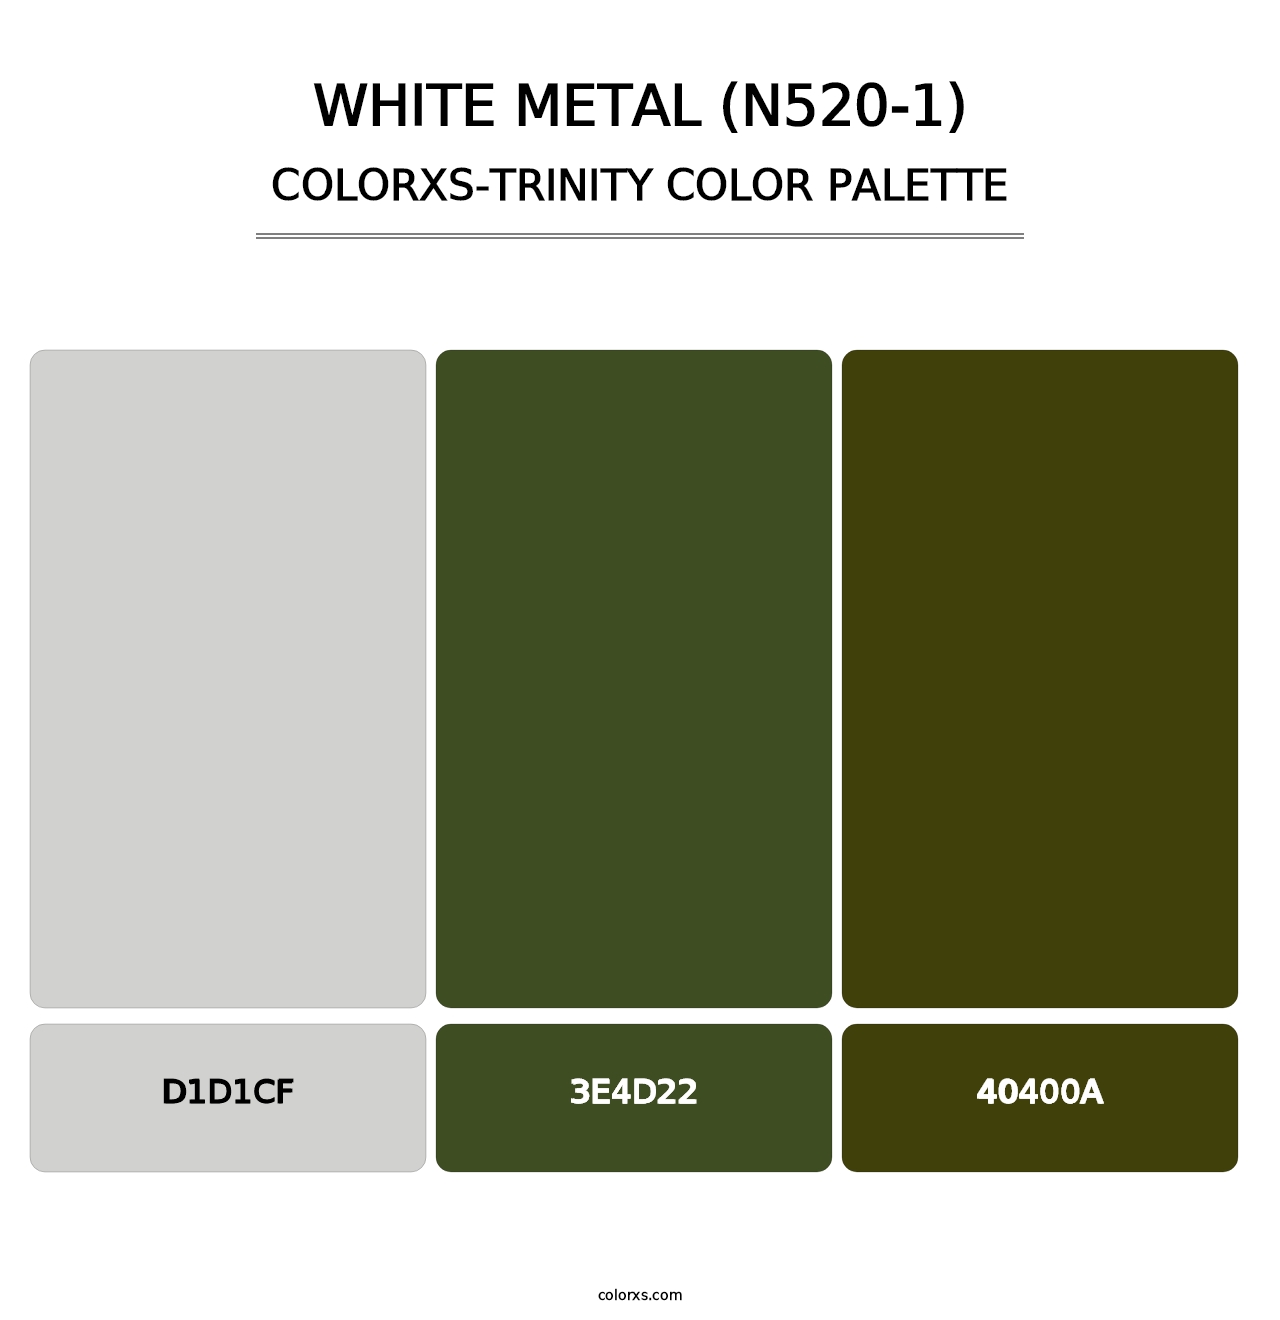 White Metal (N520-1) - Colorxs Trinity Palette